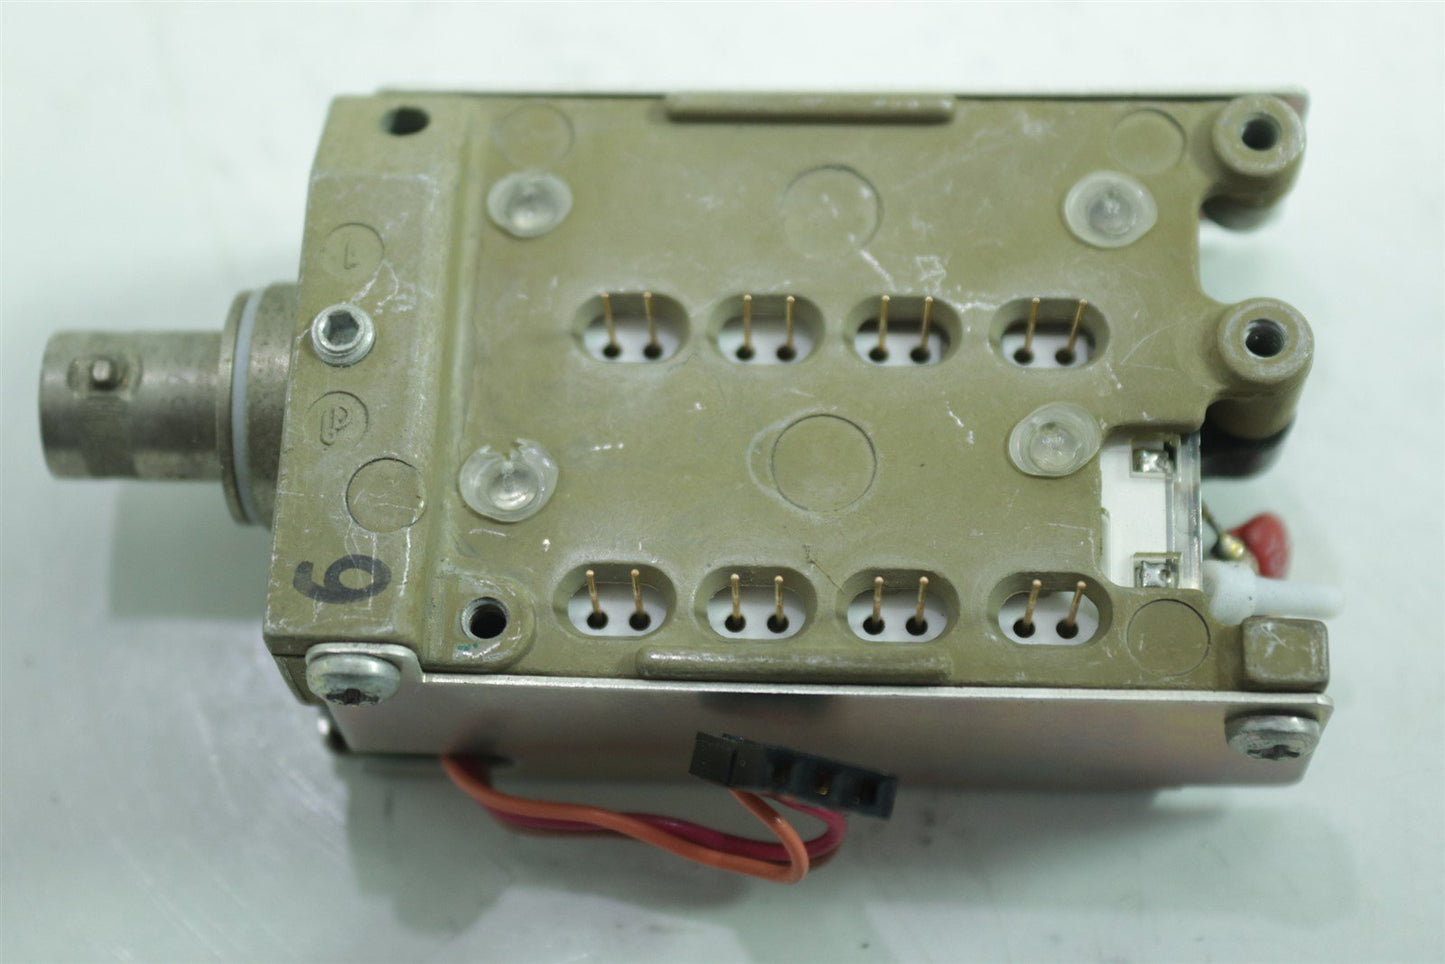 Tektronix Oscilloscope Digital Attenuator input amplifier 119-1445-02 300MHz BNC